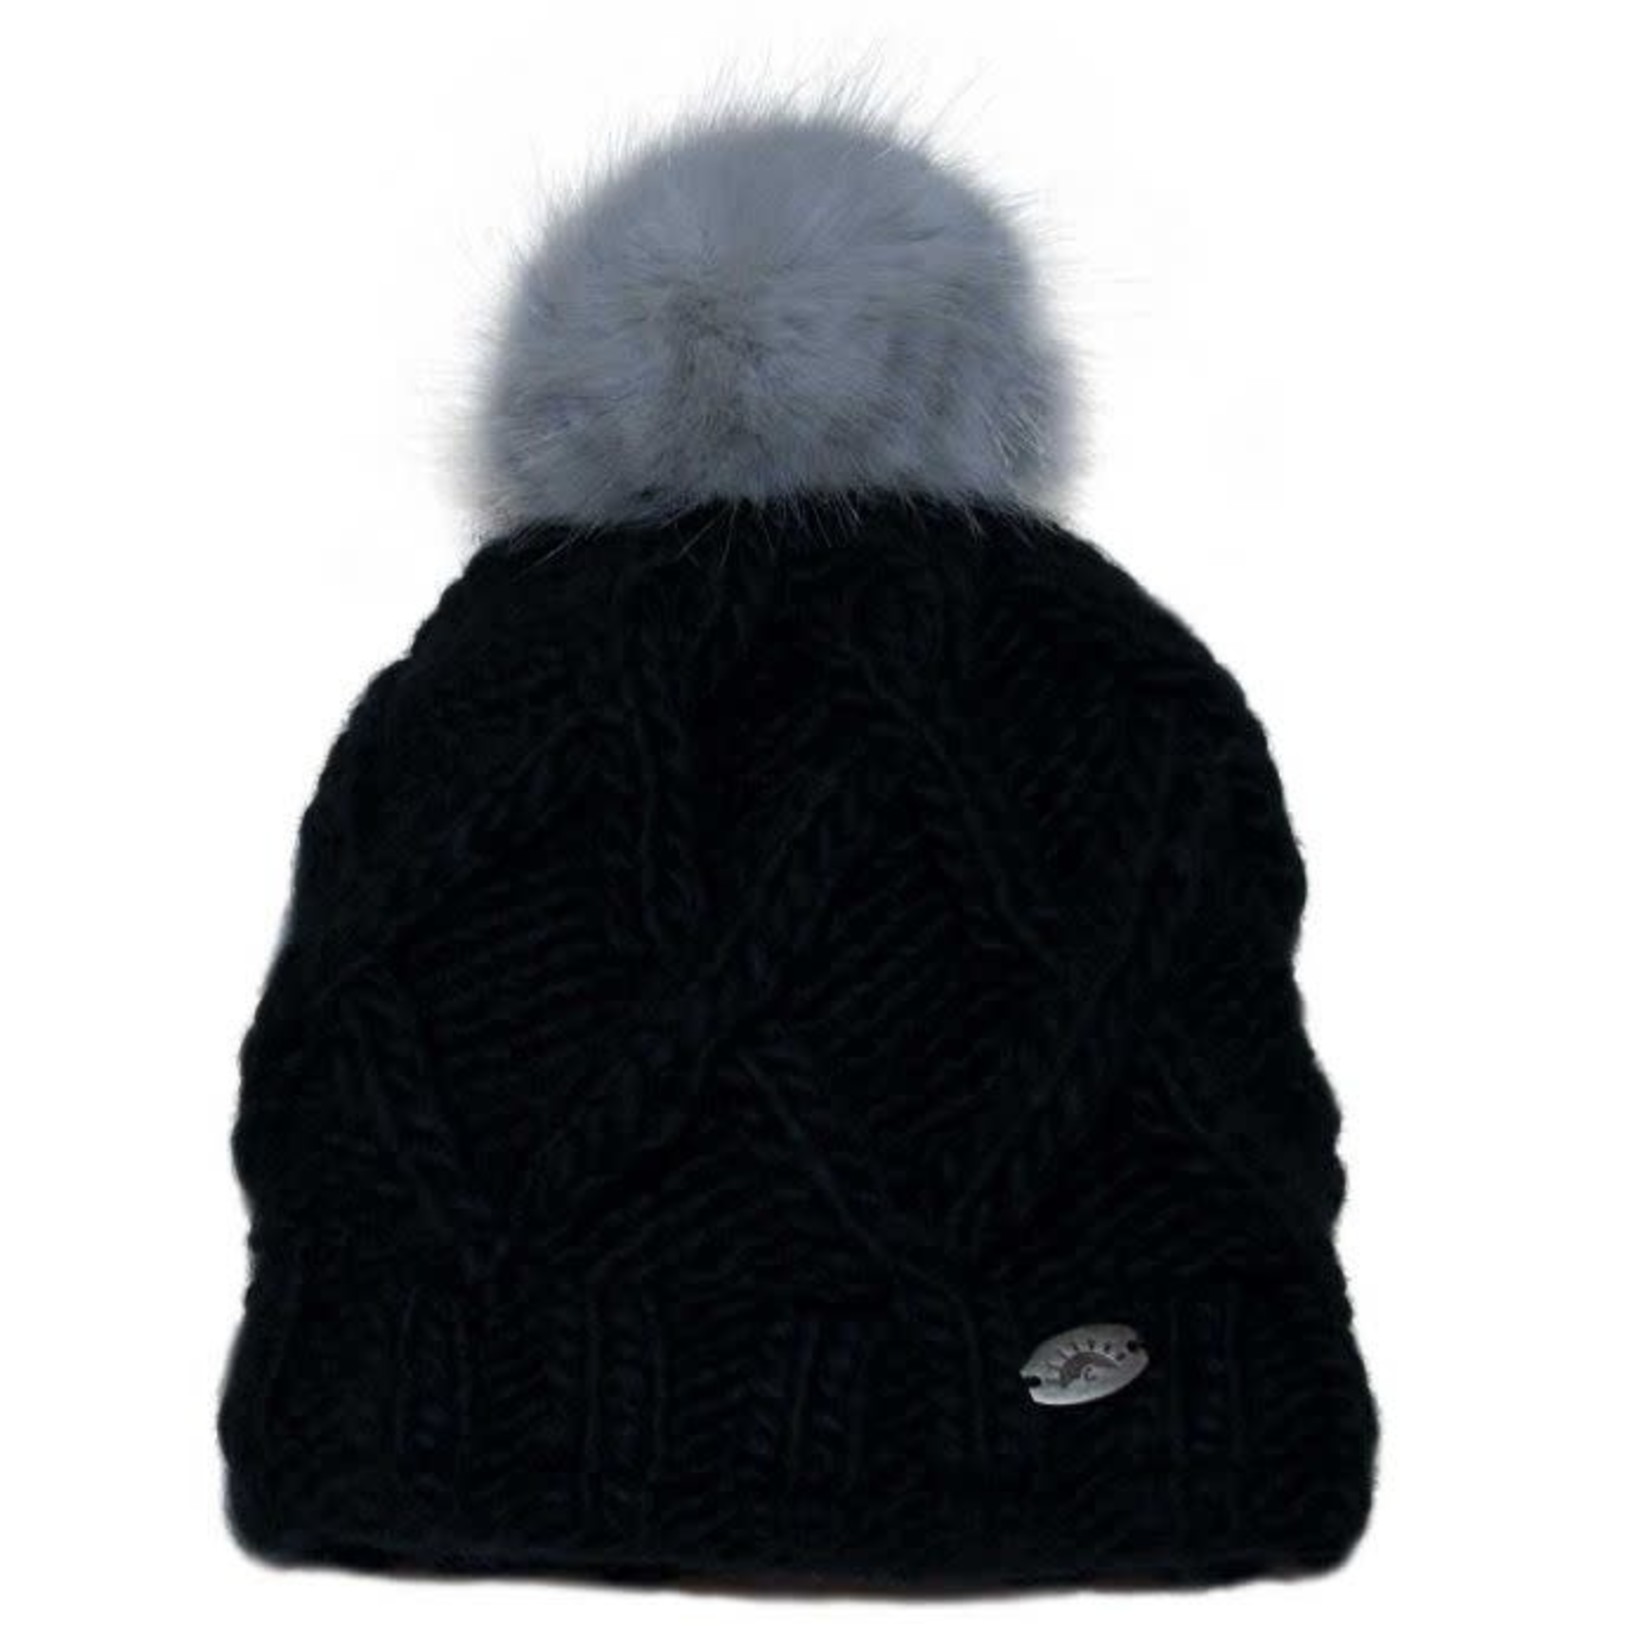 Calikids - Knit PomPom Hat